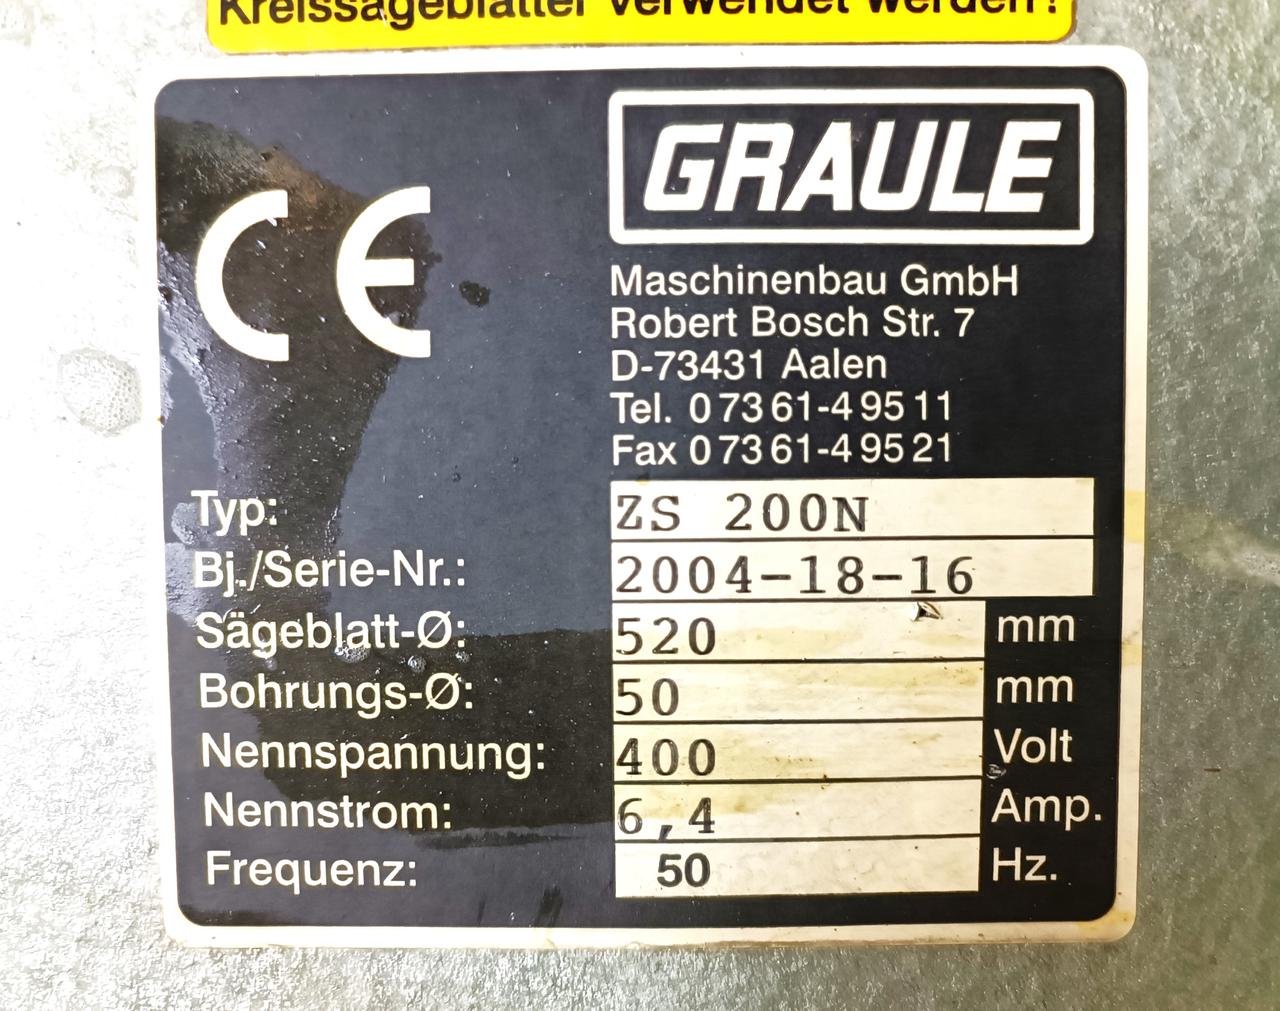 GRAULE ZS 200N Консольная пила с диском 520 мм для резки алюминиевого профиля (Б/У оборудование)